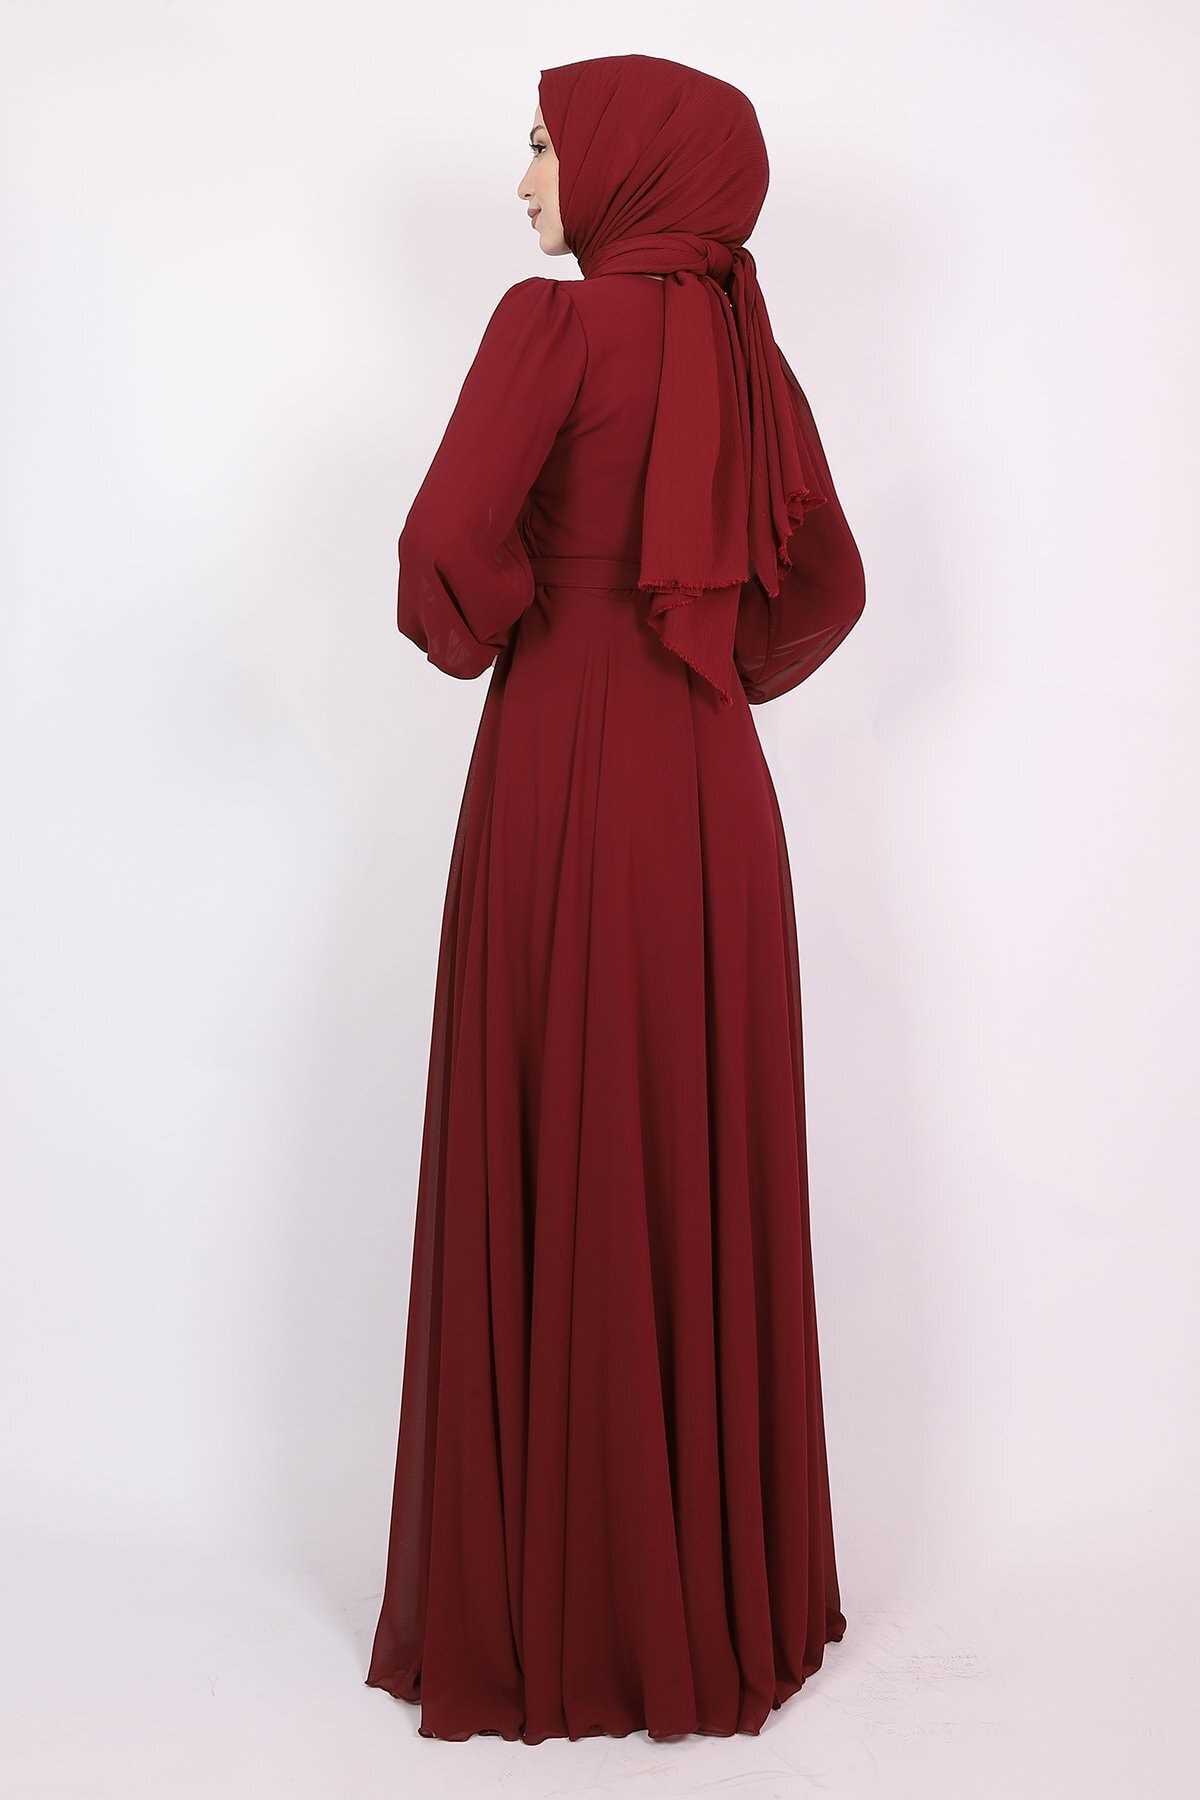 لباس مجلسی زنانه اسلامی مدل جدید برند Modarana رنگ زرشکی ty136869864